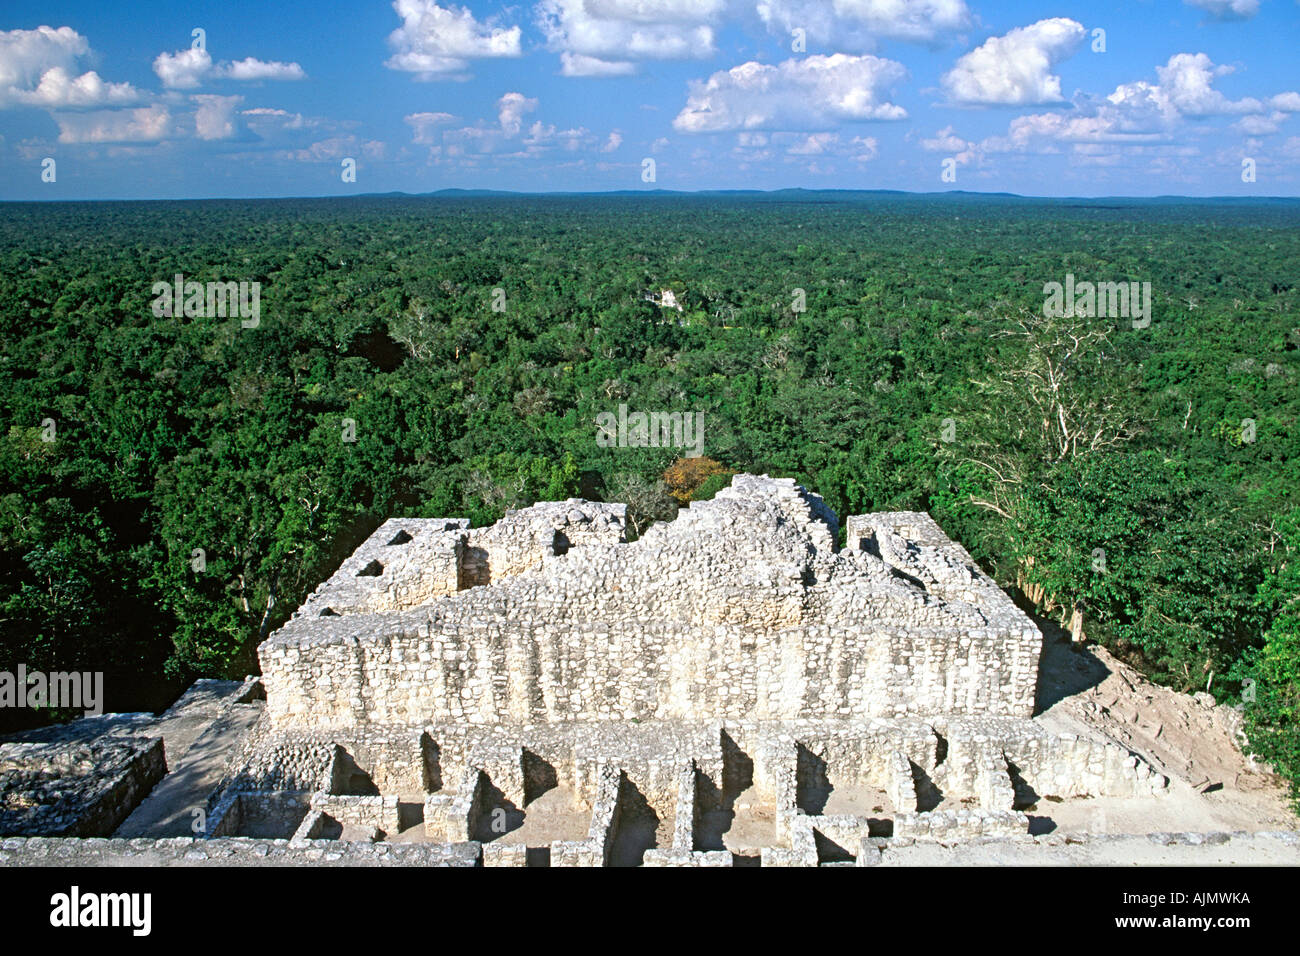 Vue sur la forêt tropicale de Tierras Bajas haut de la Calakmul ruines mayas dans l'État de Campeche, dans le sud du Mexique. Banque D'Images